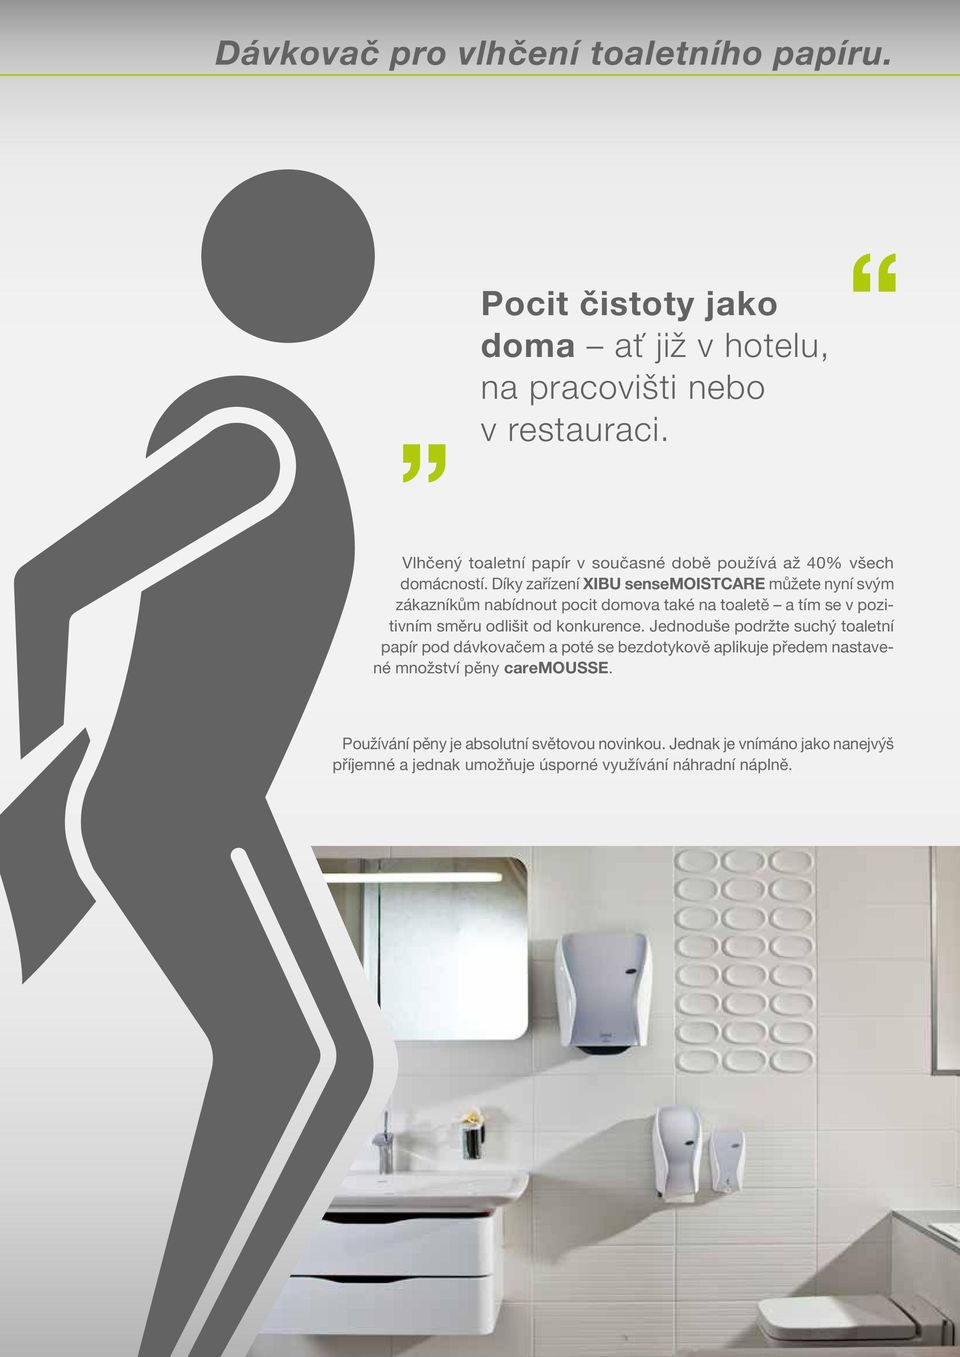 Díky zařízení XIBU sensemoistcare můžete nyní svým zákazníkům nabídnout pocit domova také na toaletě a tím se v pozitivním směru odlišit od konkurence.